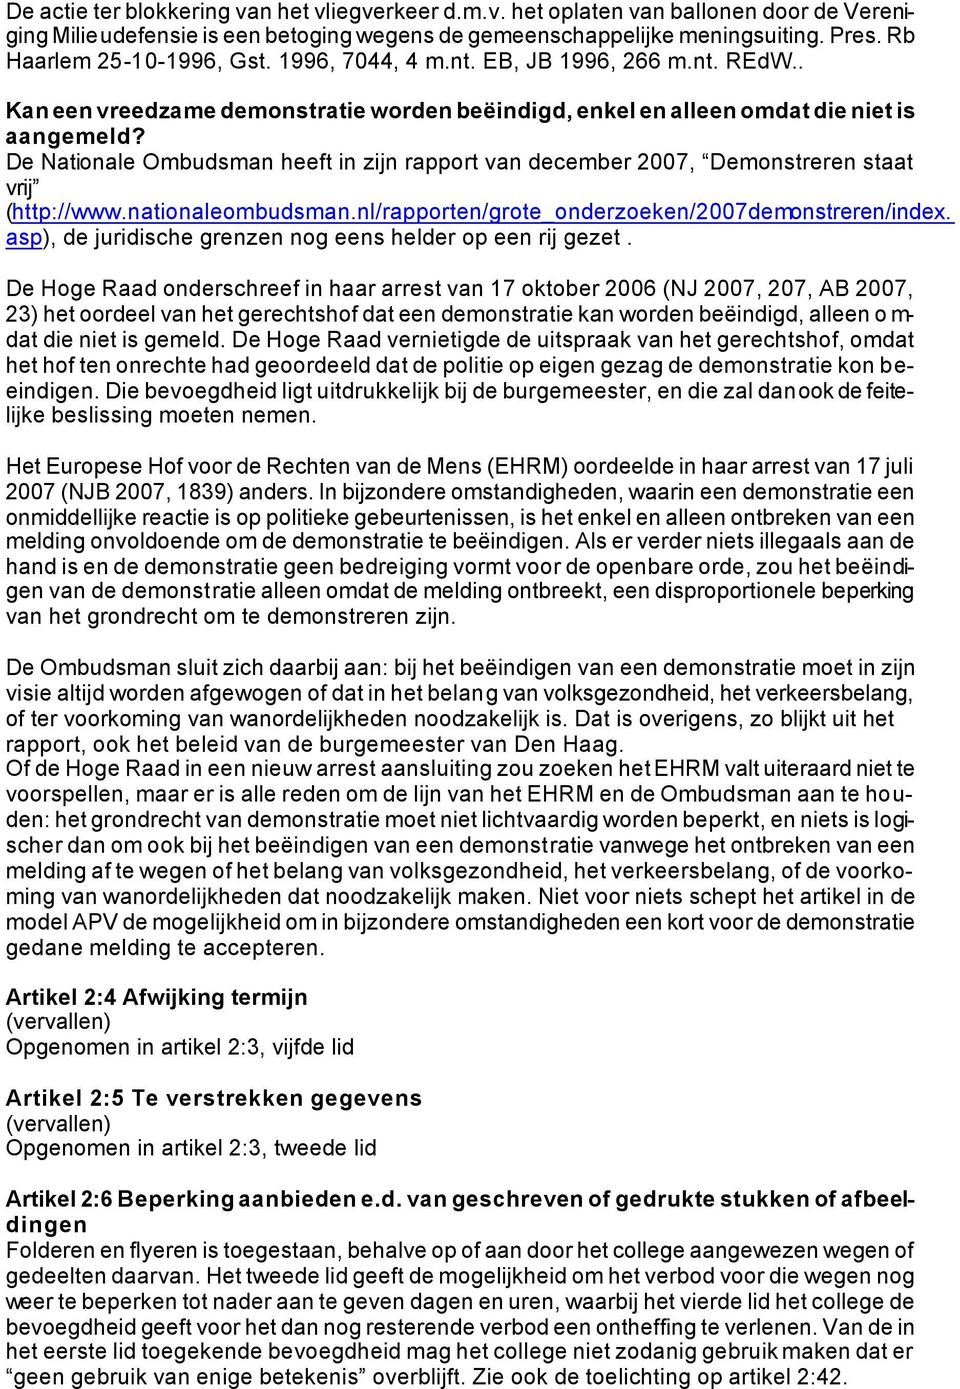 De Nationale Ombudsman heeft in zijn rapport van december 2007, Demonstreren staat vrij (http://www.nationaleombudsman.nl/rapporten/grote_onderzoeken/2007demonstreren/index.